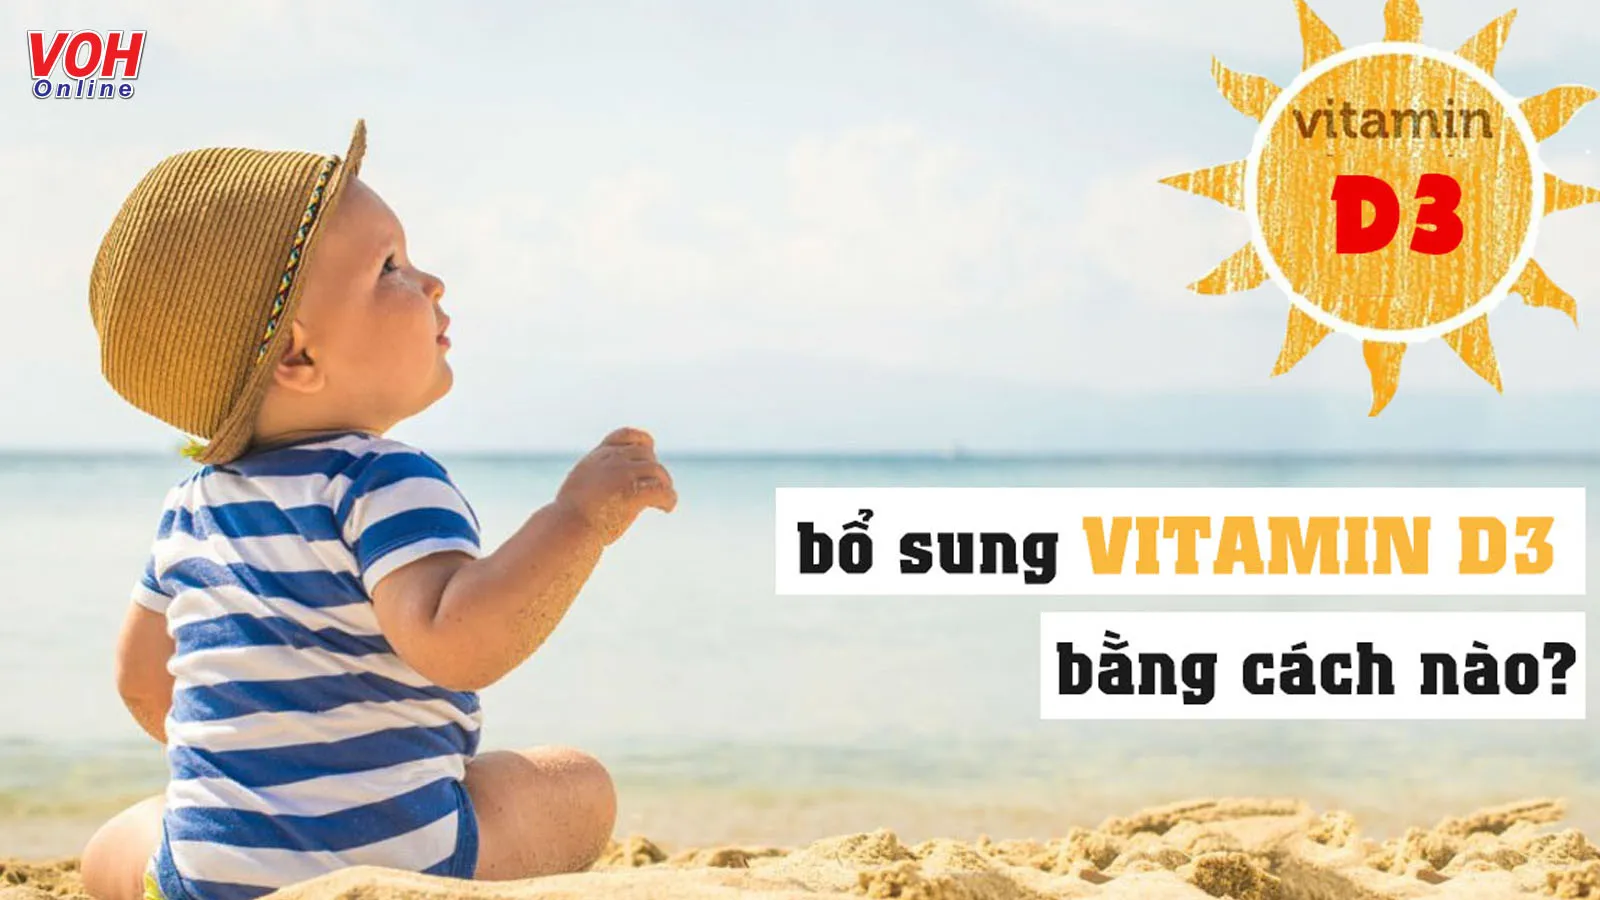 Vì sao cần bổ sung vitamin D3 cho trẻ sơ sinh và trẻ nhỏ?